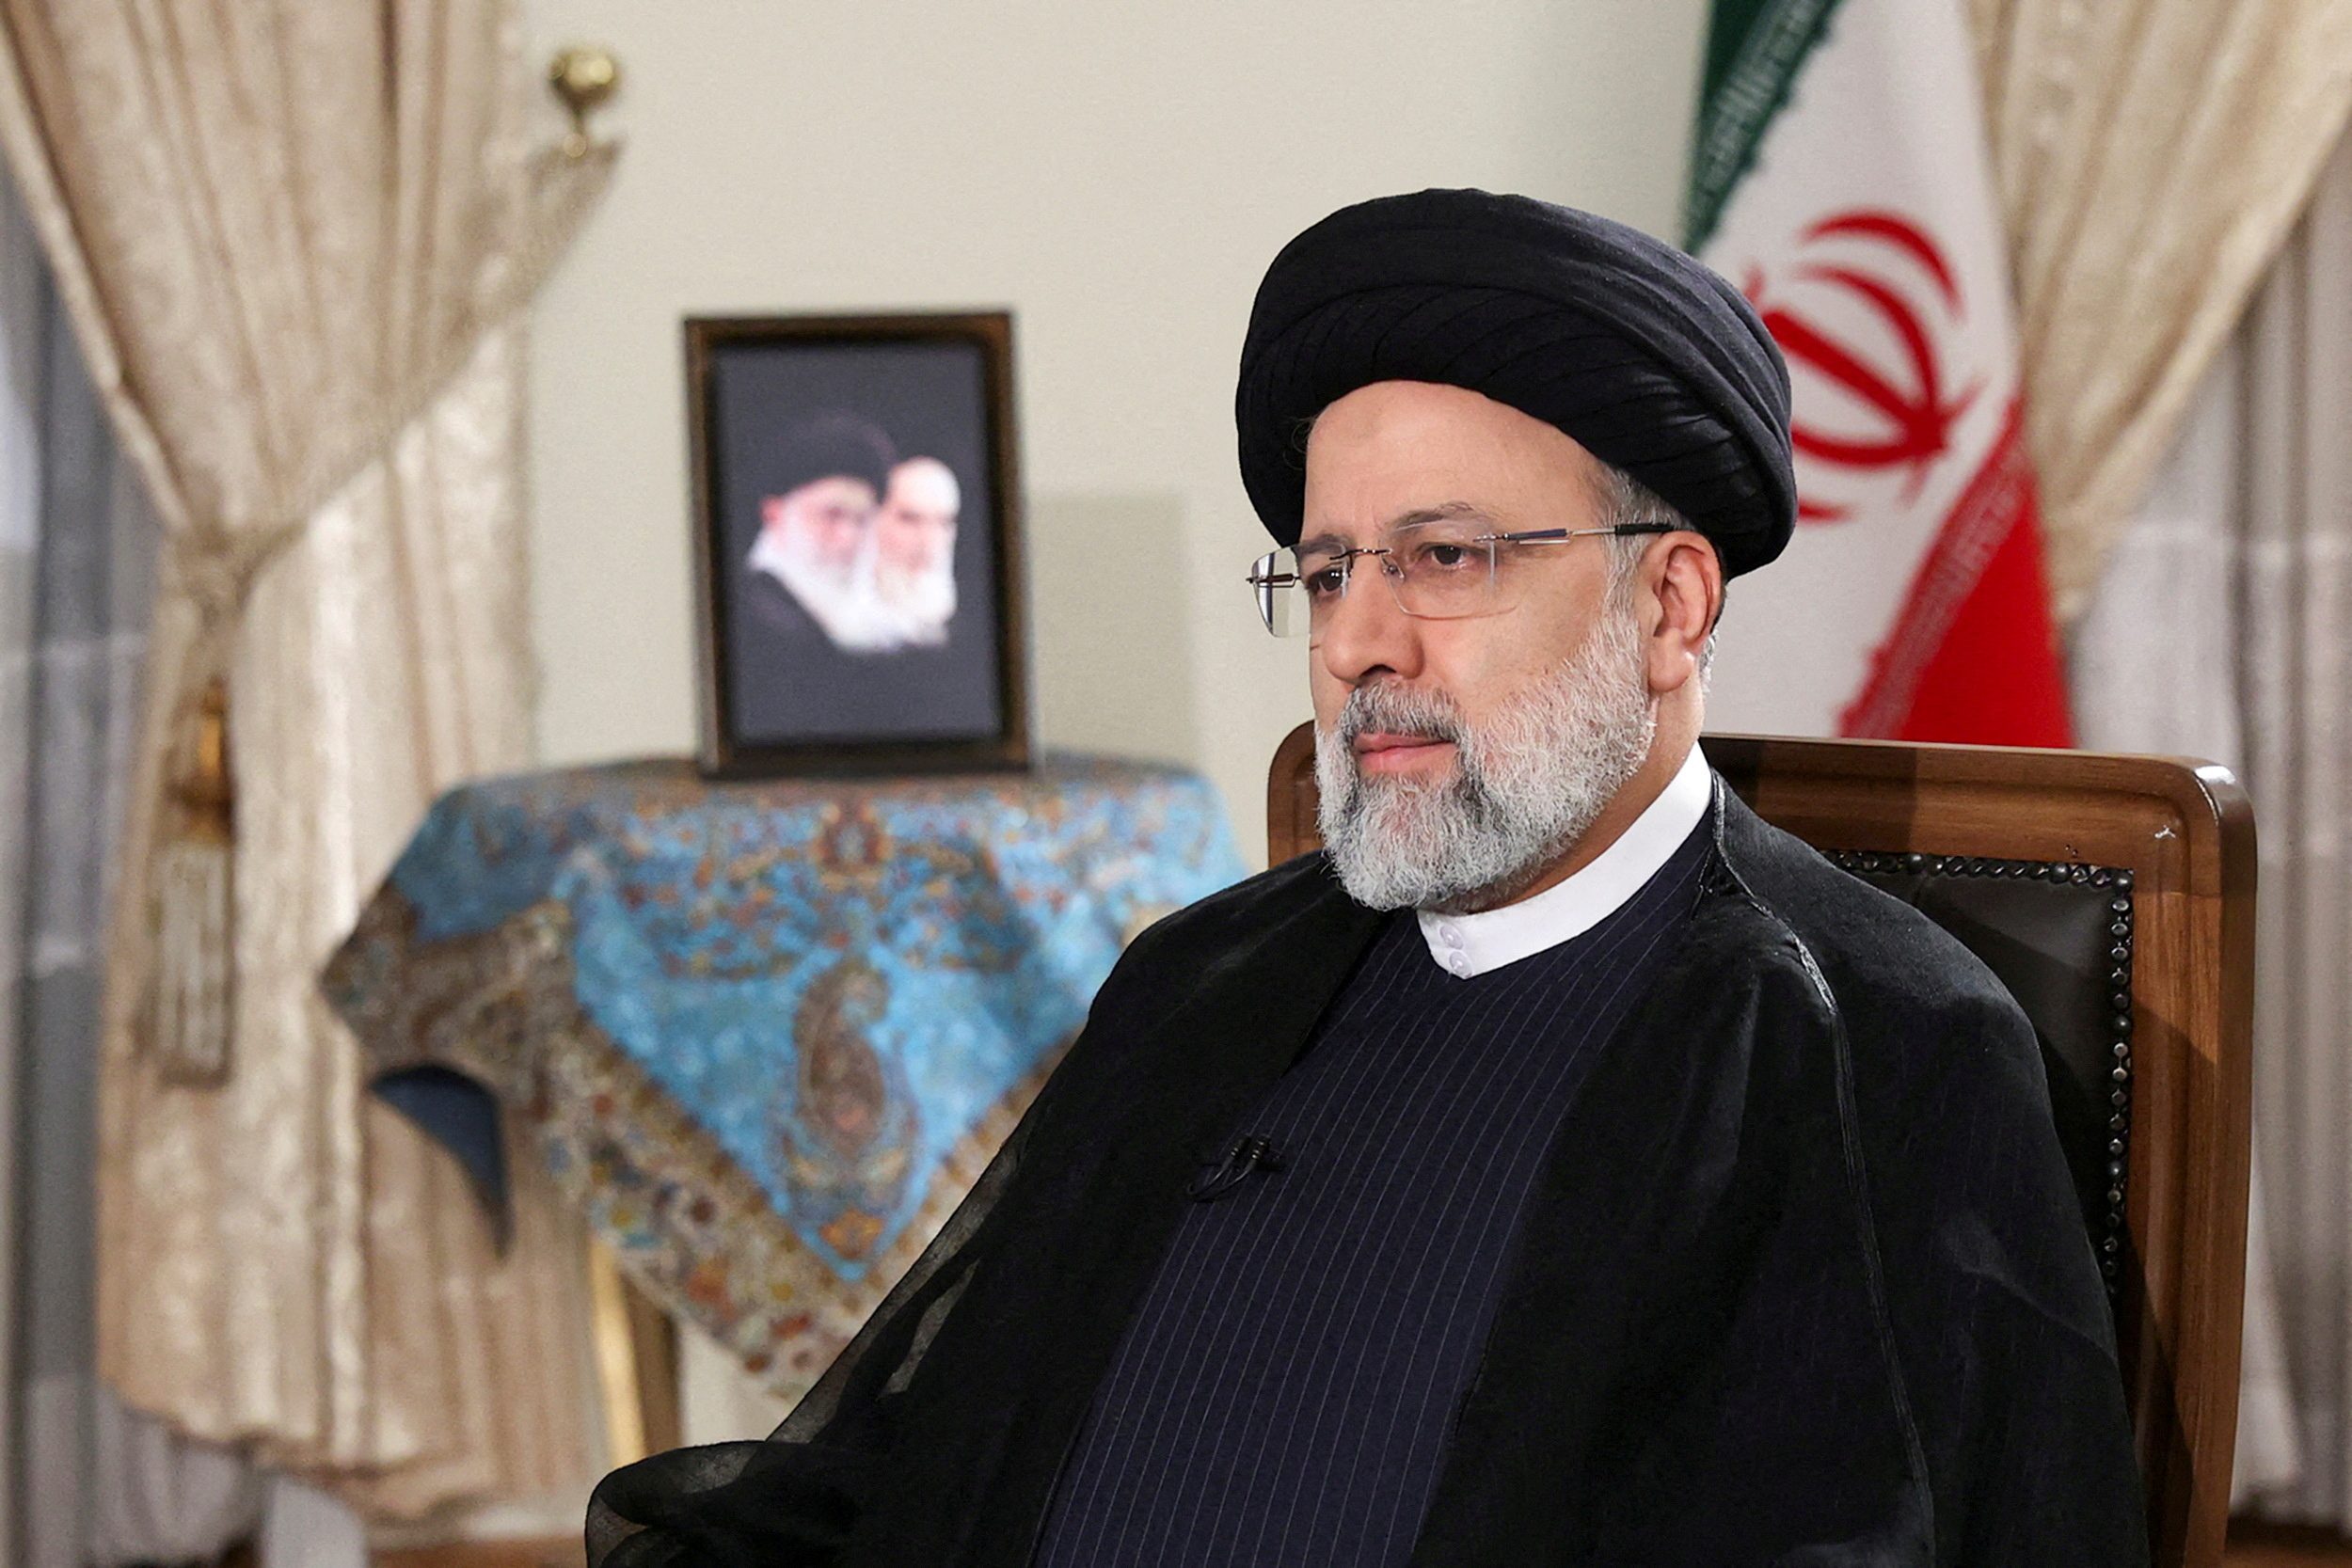 رئيس مكتب الرئاسة الإيرانية يروي تفاصيل اللحظات الأخيرة قبل سقوط طائرة رئيسي: “الطقس كان طبيعياً للغاية”